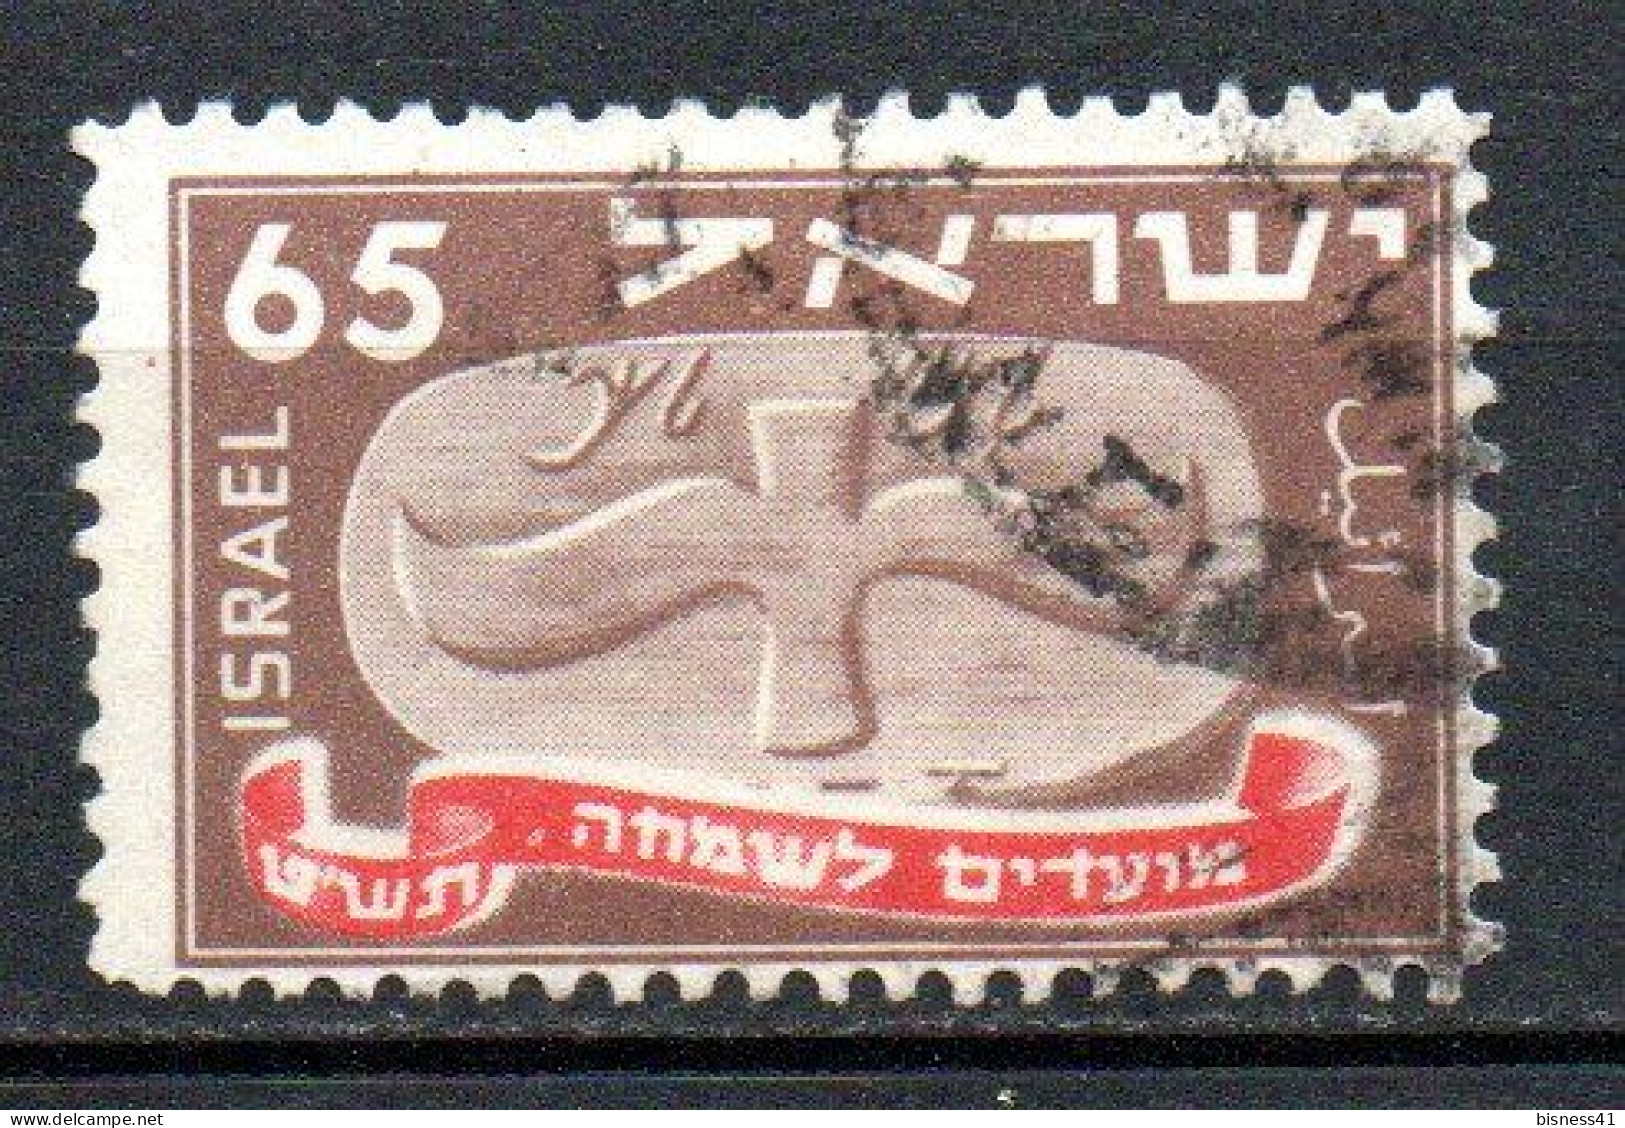 Col33 Israel  1948  N° 14  Oblitéré  Cote : 8,50€ - Oblitérés (sans Tabs)